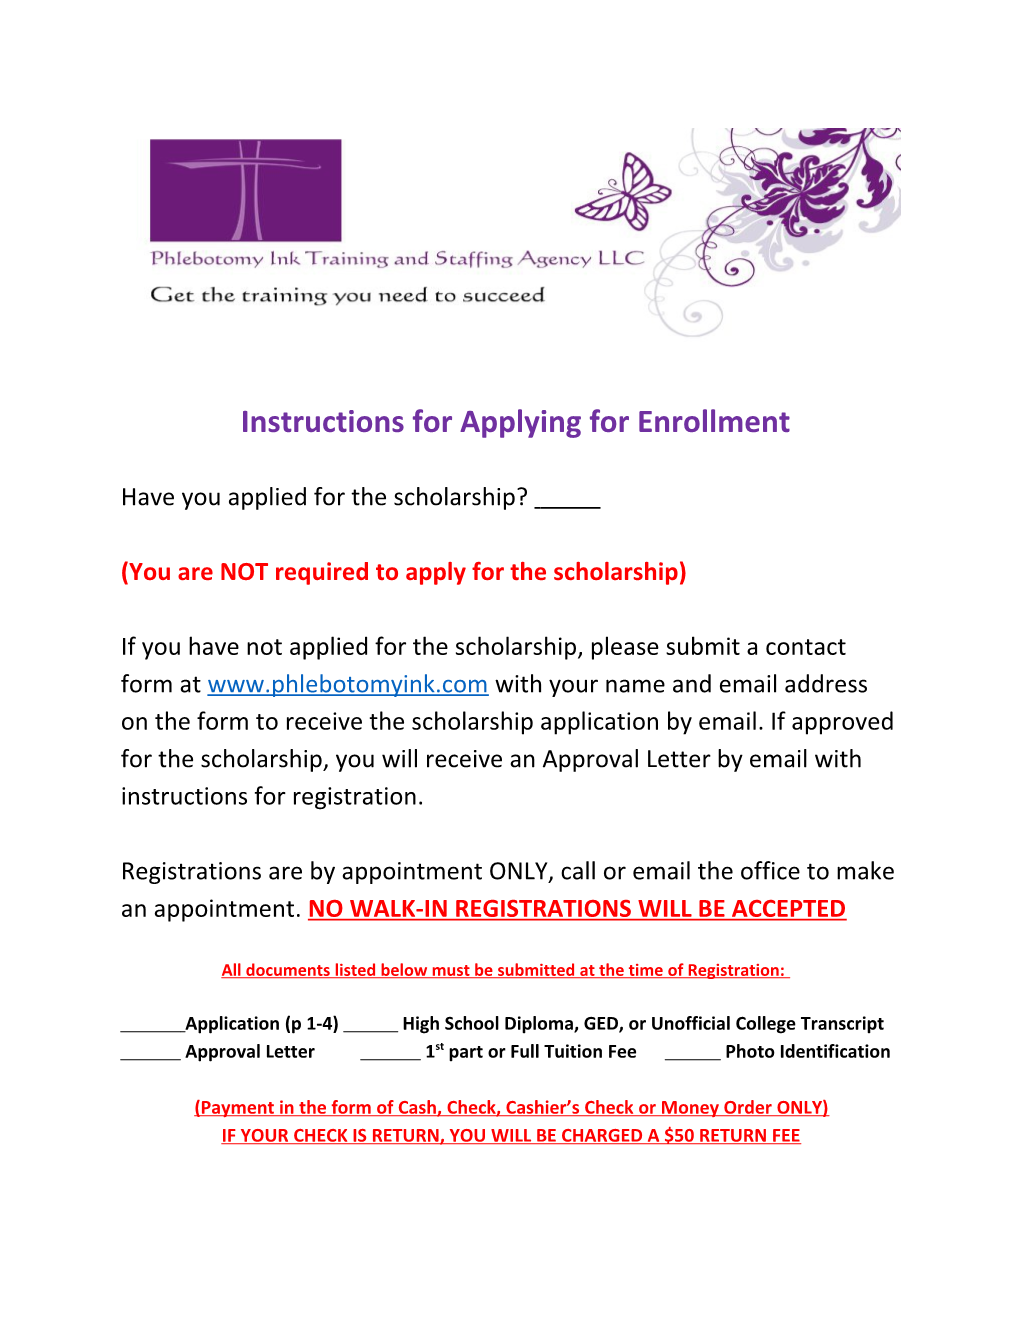 Instructions for Applying for Enrollment